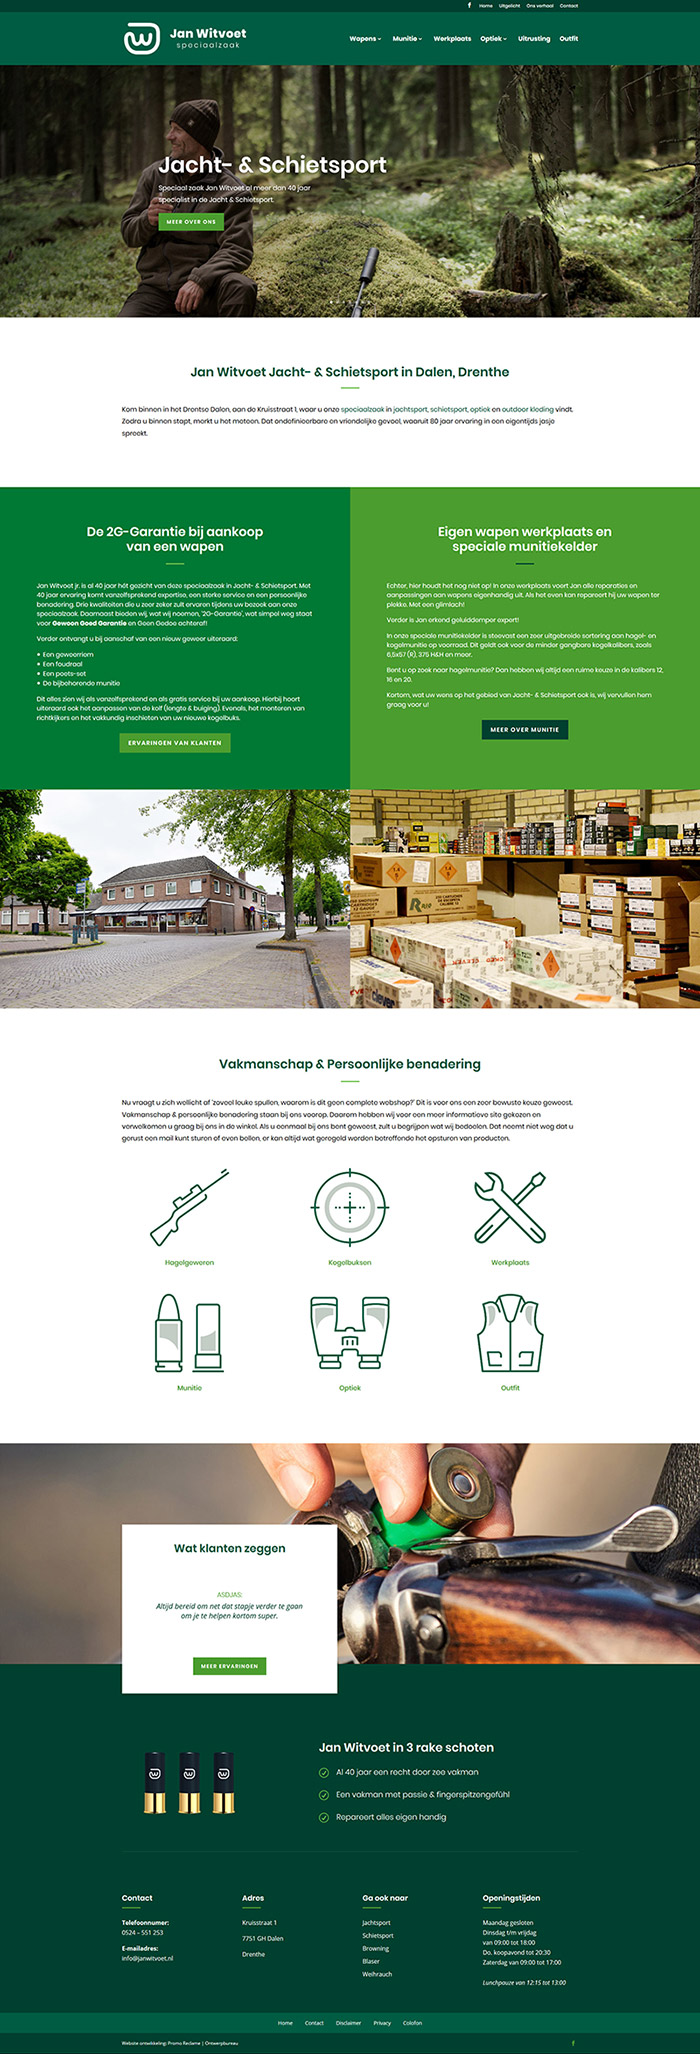 Website ontwikkeling Jan Witvoet - Jacht- & Schietsport